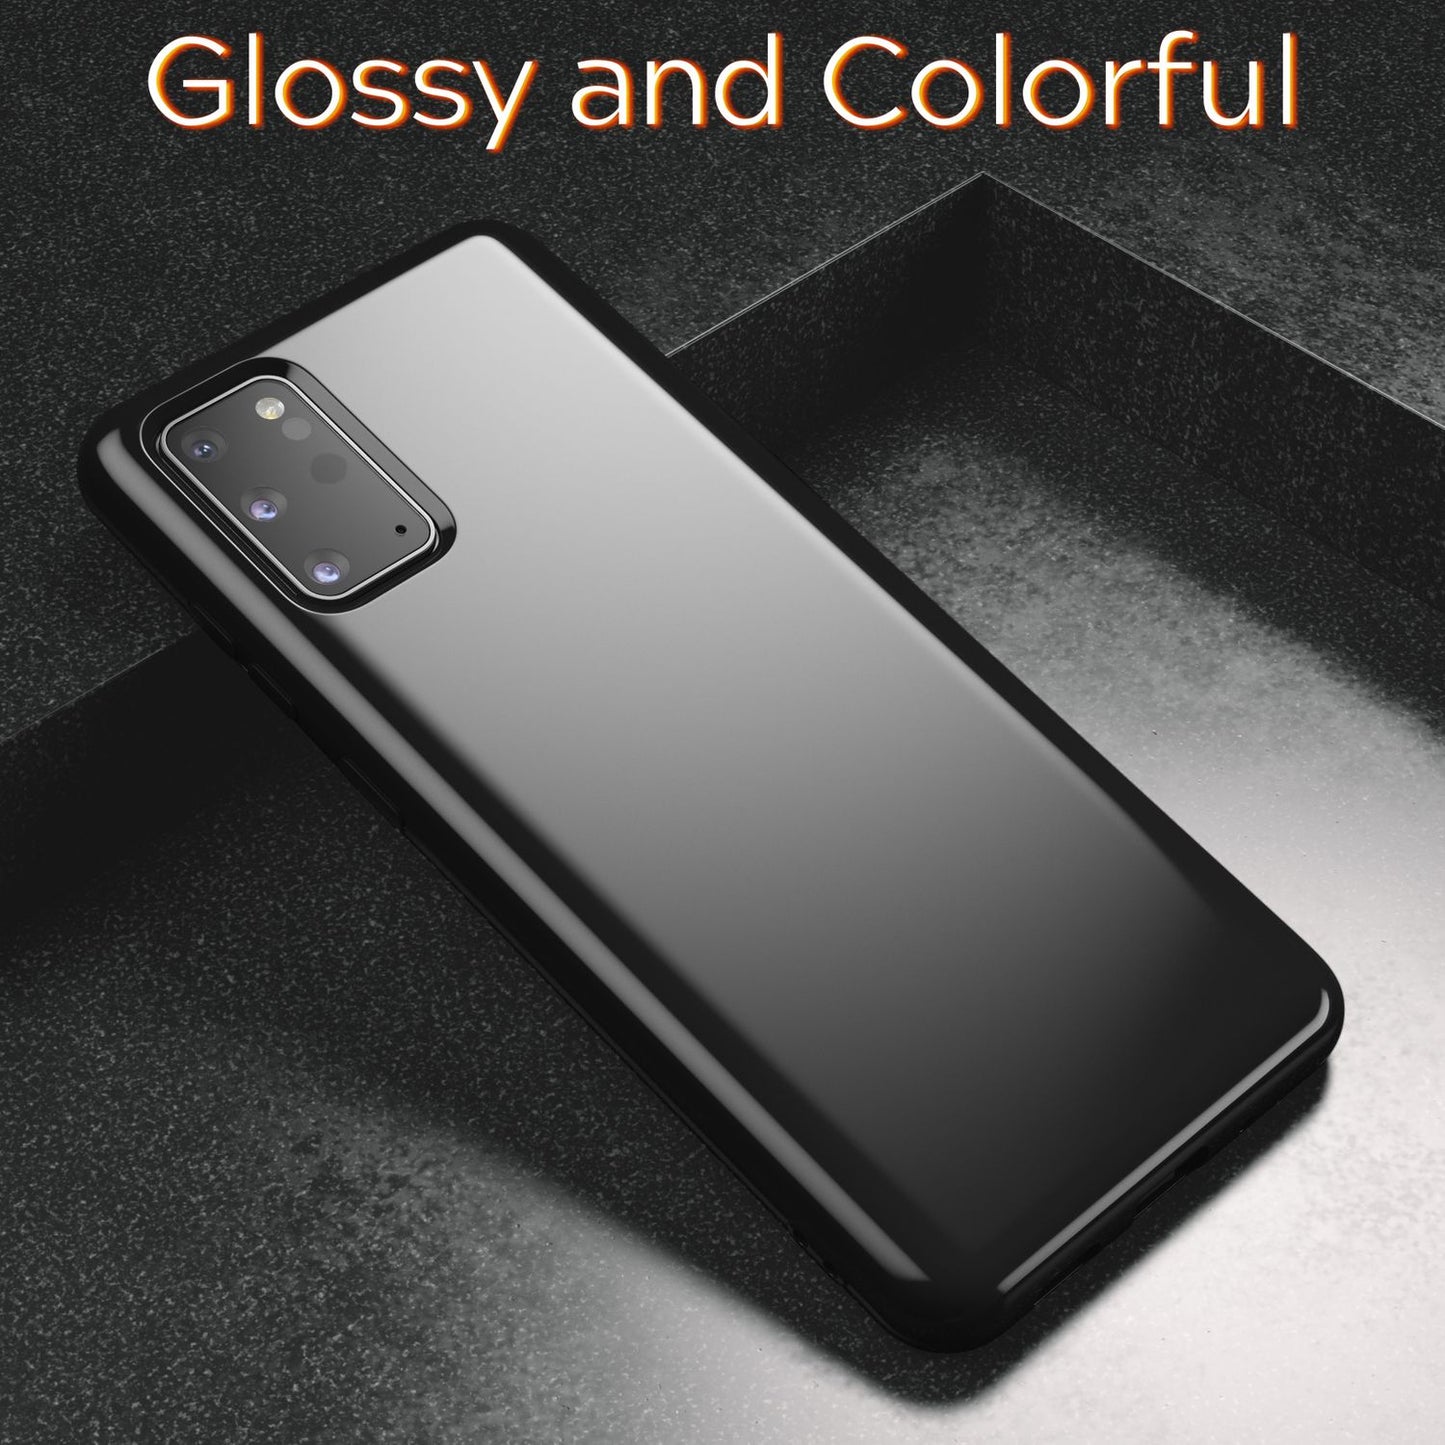 NALIA Silikon Handy Hülle für Samsung Galaxy S20, TPU Schutz Case Cover Tasche